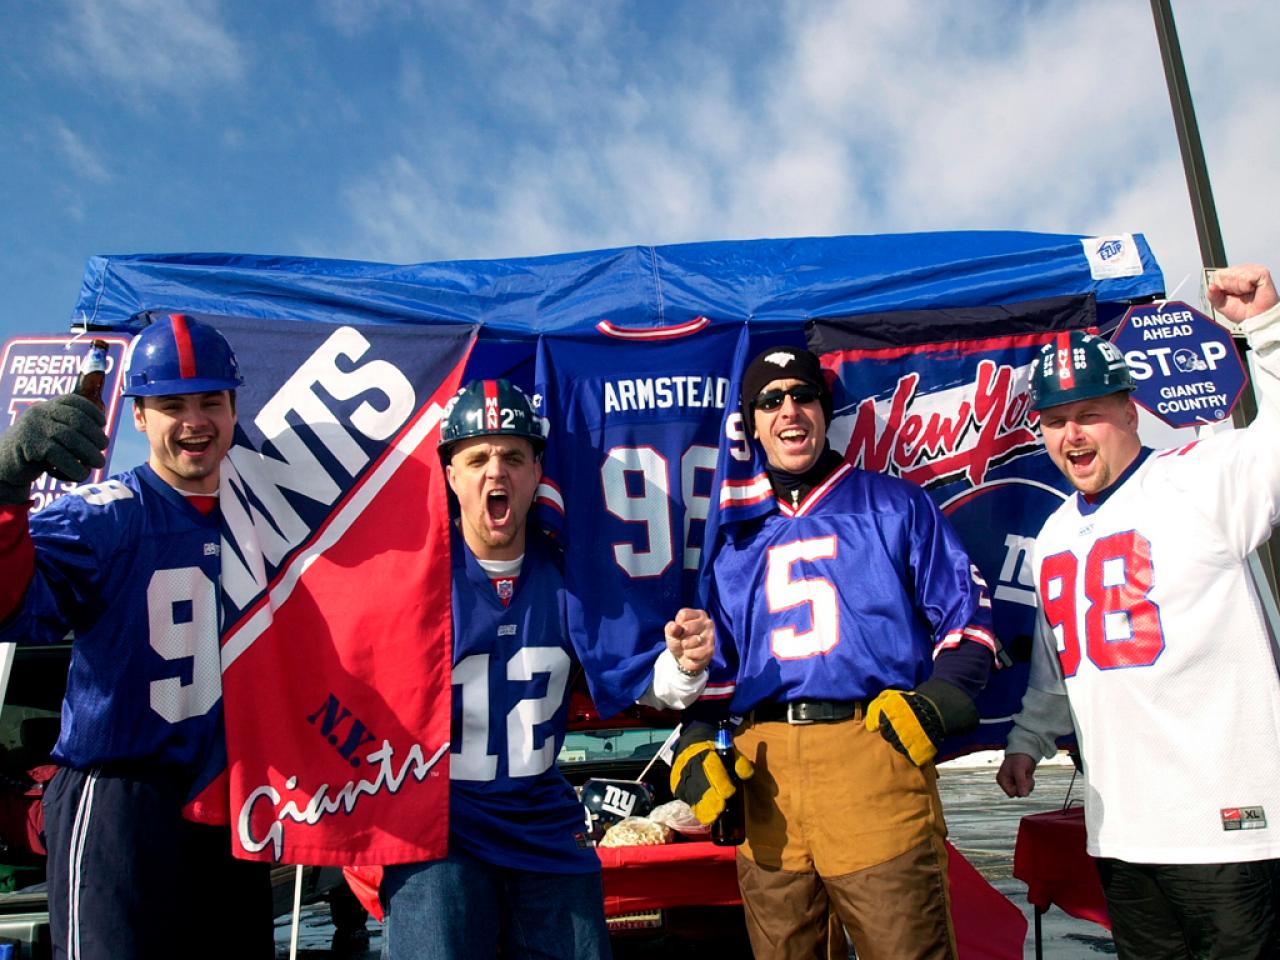 Philadelphia Eagles, New York Giants fans enjoy tailgate